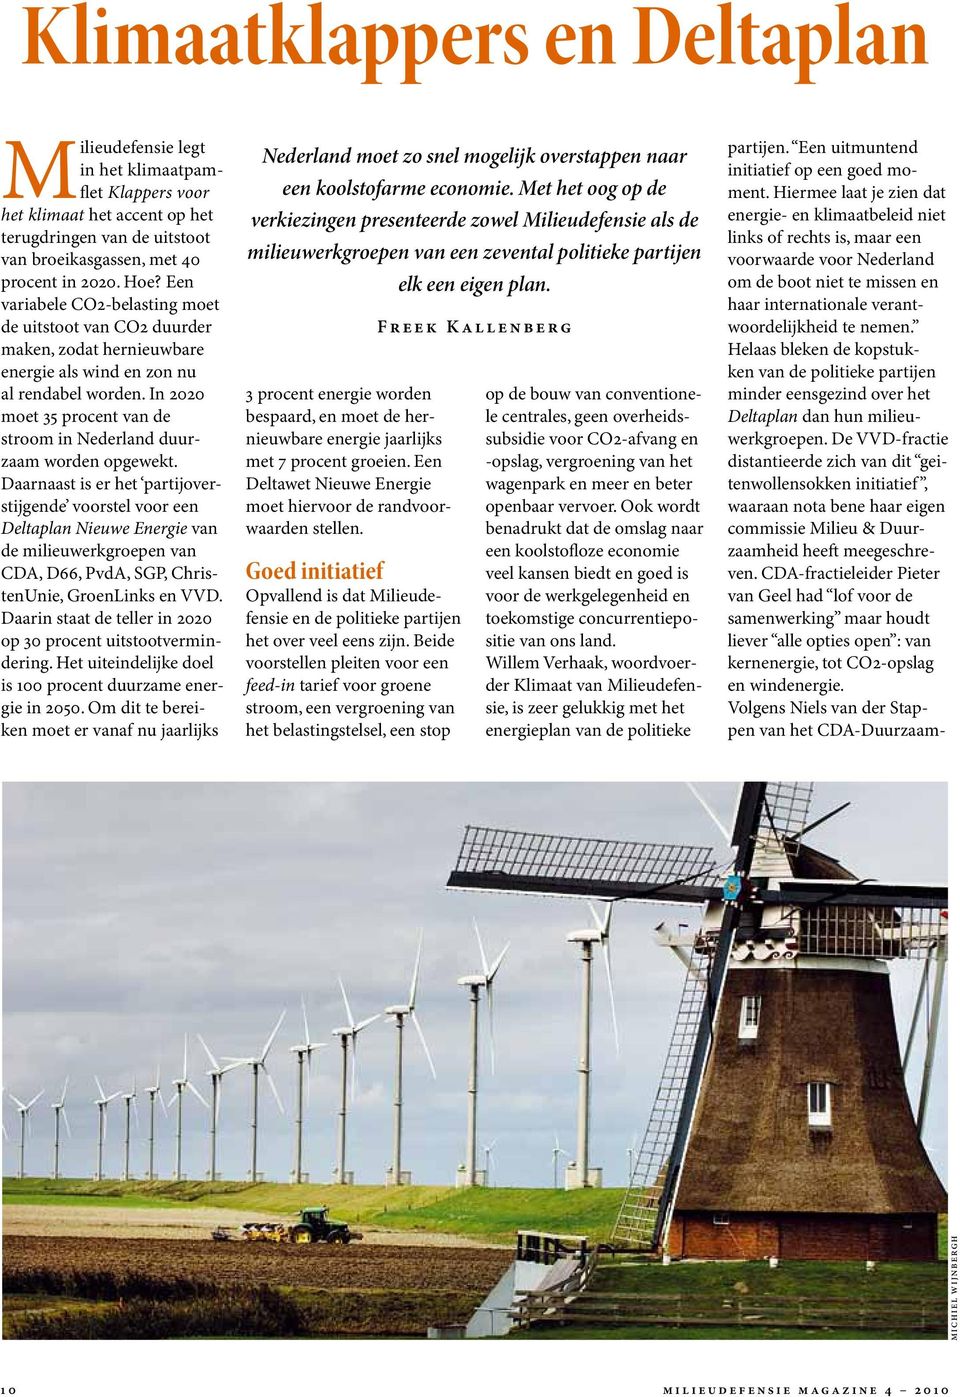 In 2020 moet 35 procent van de stroom in Nederland duurzaam worden opgewekt.